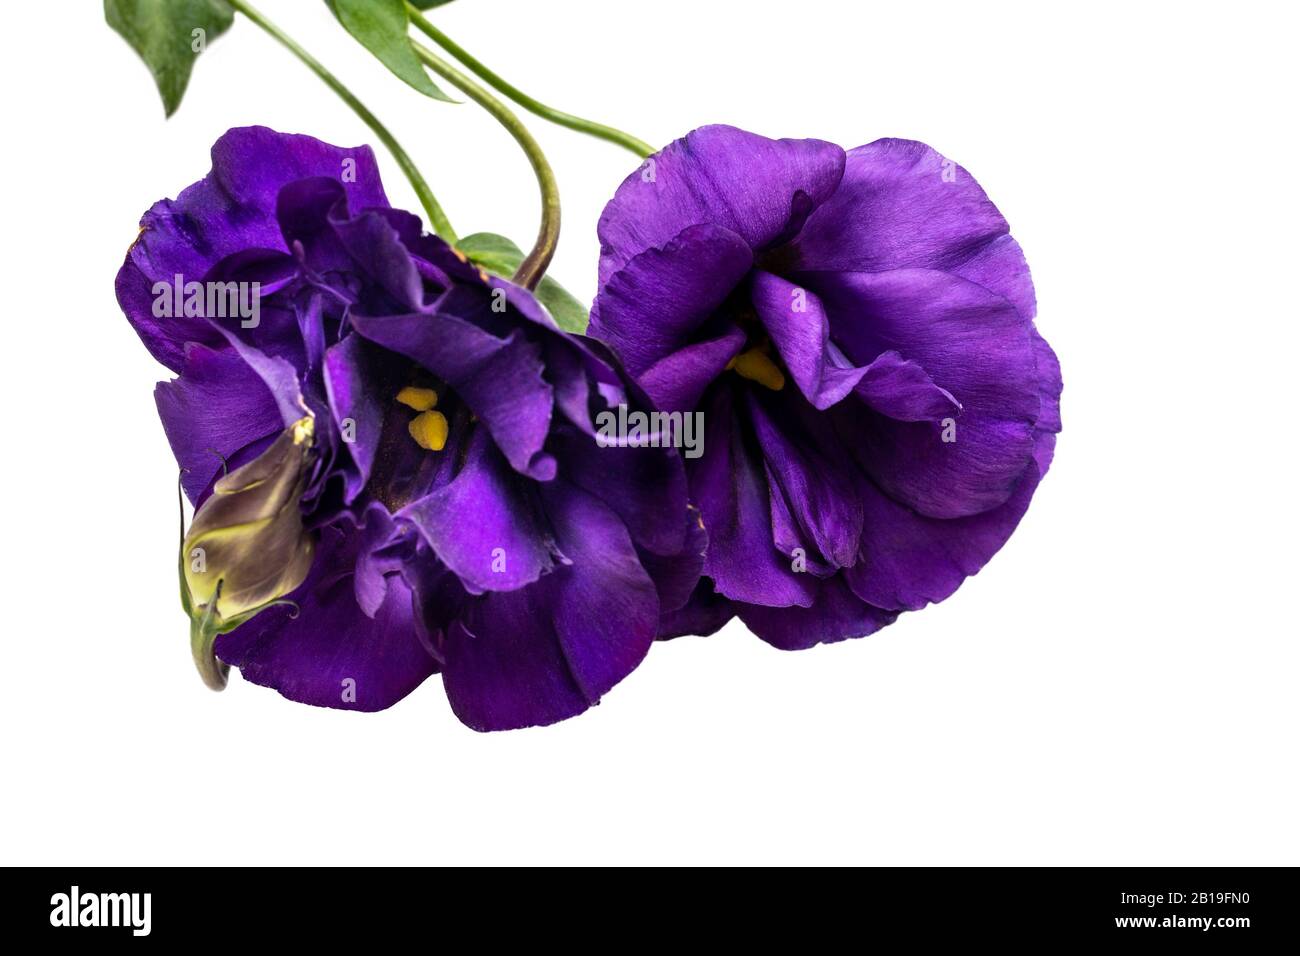 Purple Eustoma flower isolated on white background Stock Photo